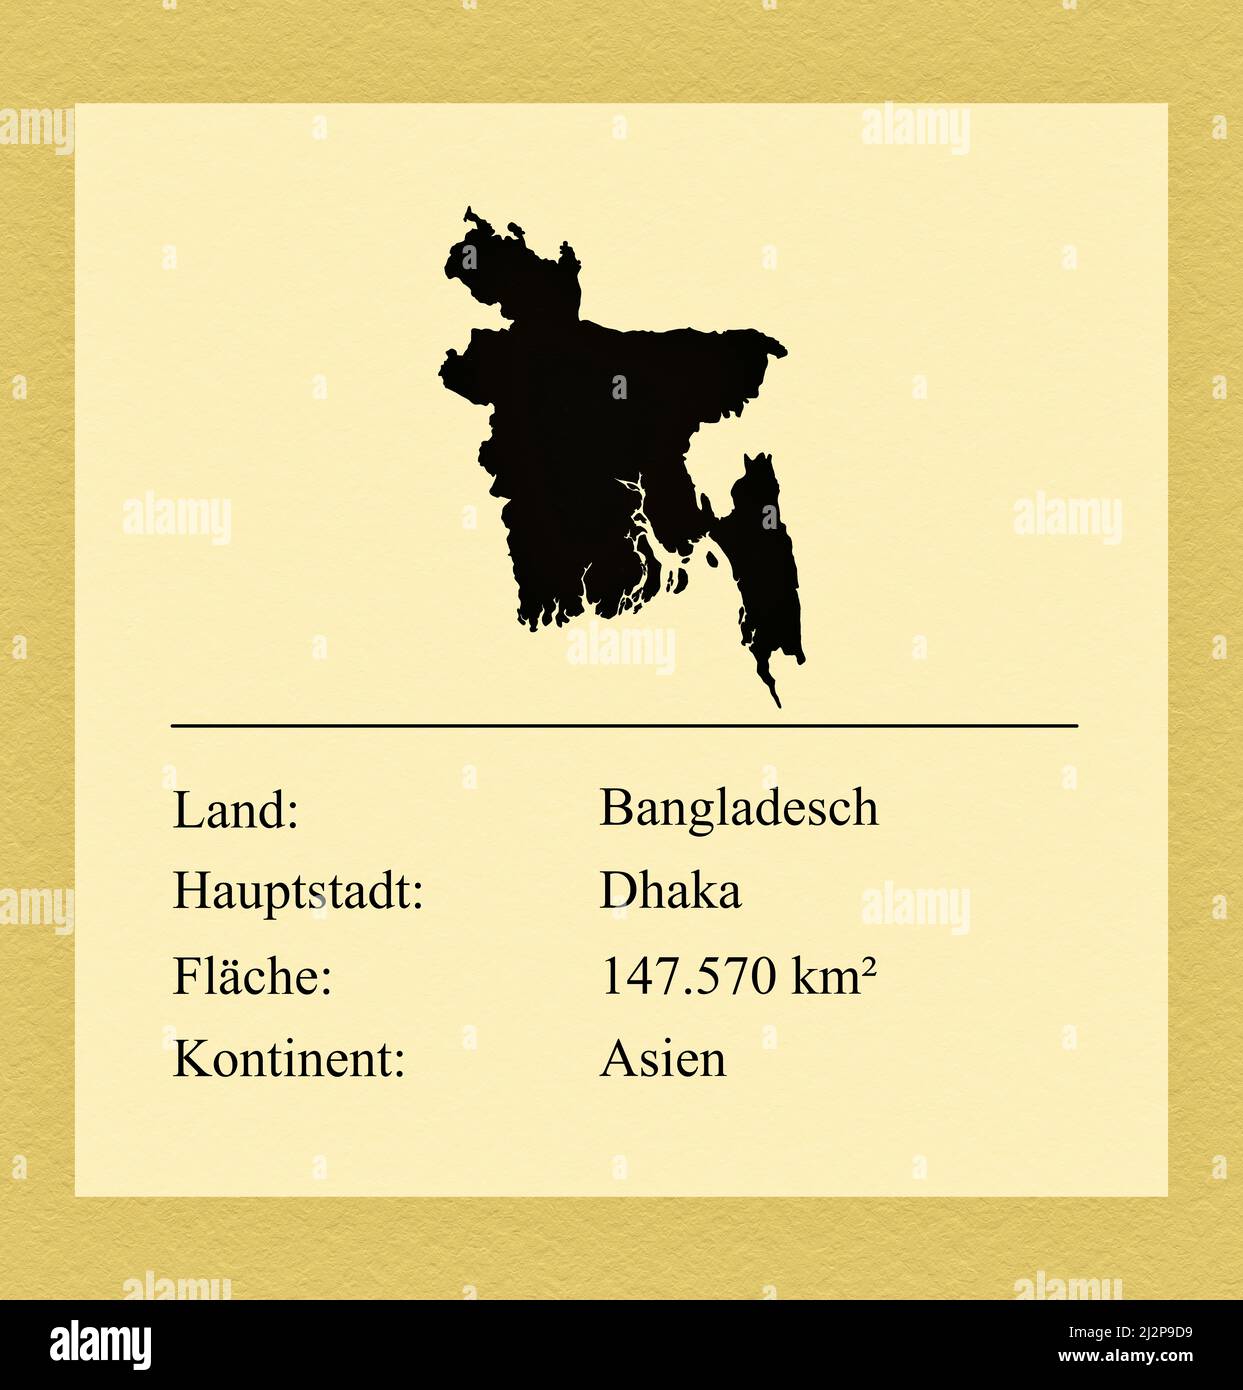 Umrisse des Landes Bangladesch, darunter ein kleiner Steckbrief mit Ländernamen, Hauptstadt, Fläche und Kontinent Foto Stock